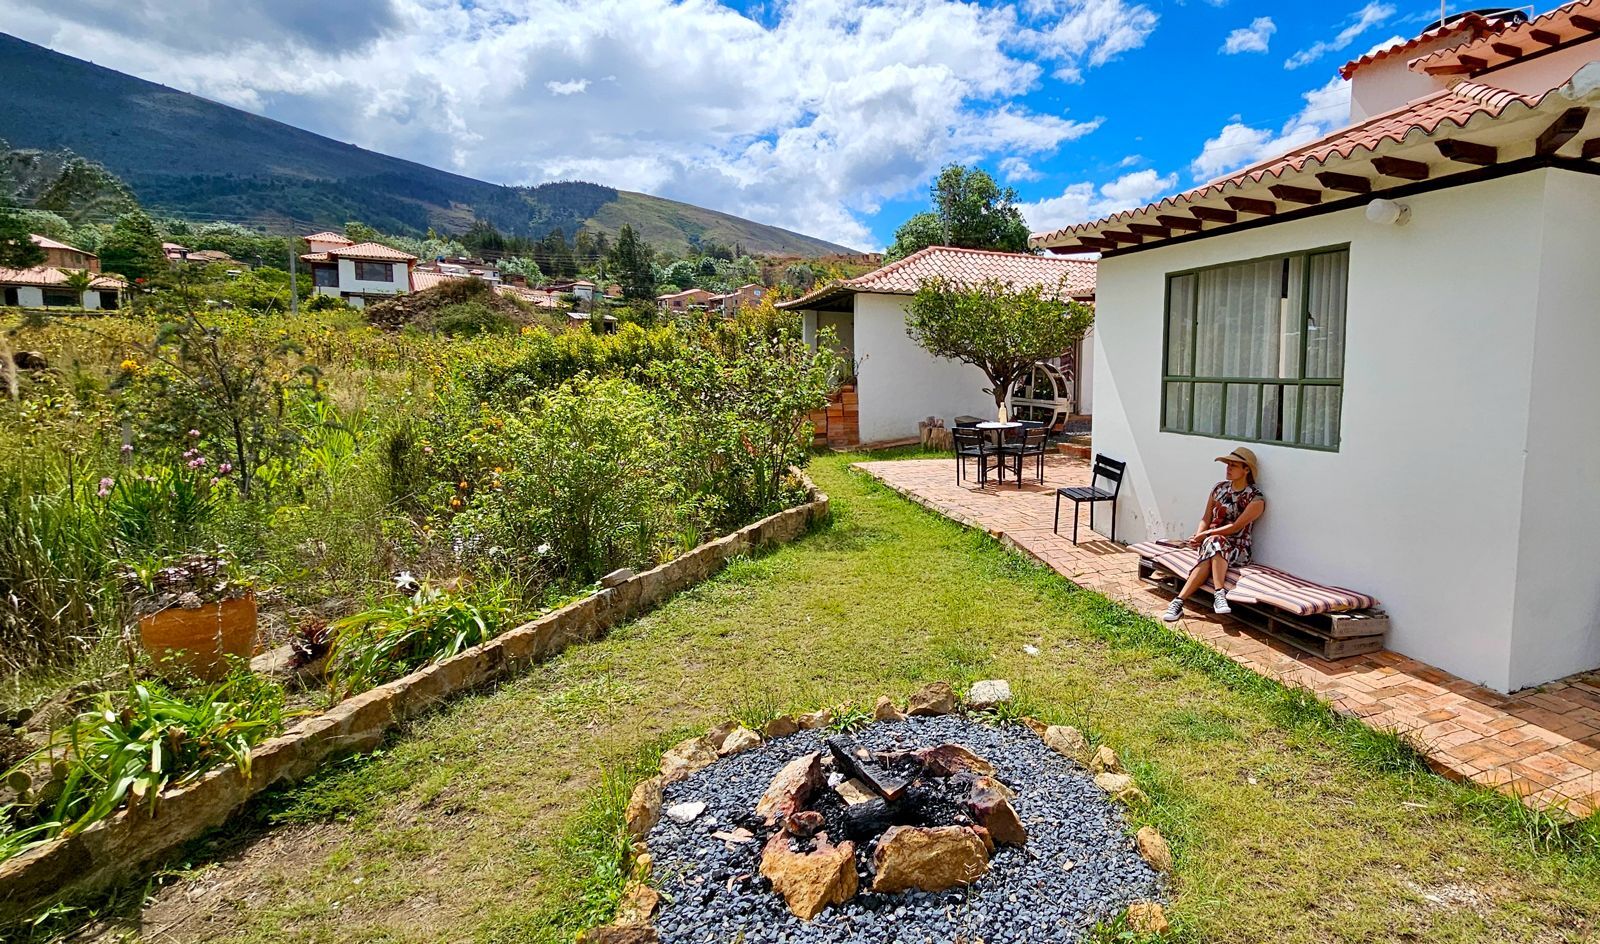 Confort y Naturaleza en Un Solo Lugar - Hostal Madre Tierra en Villa de Leyva